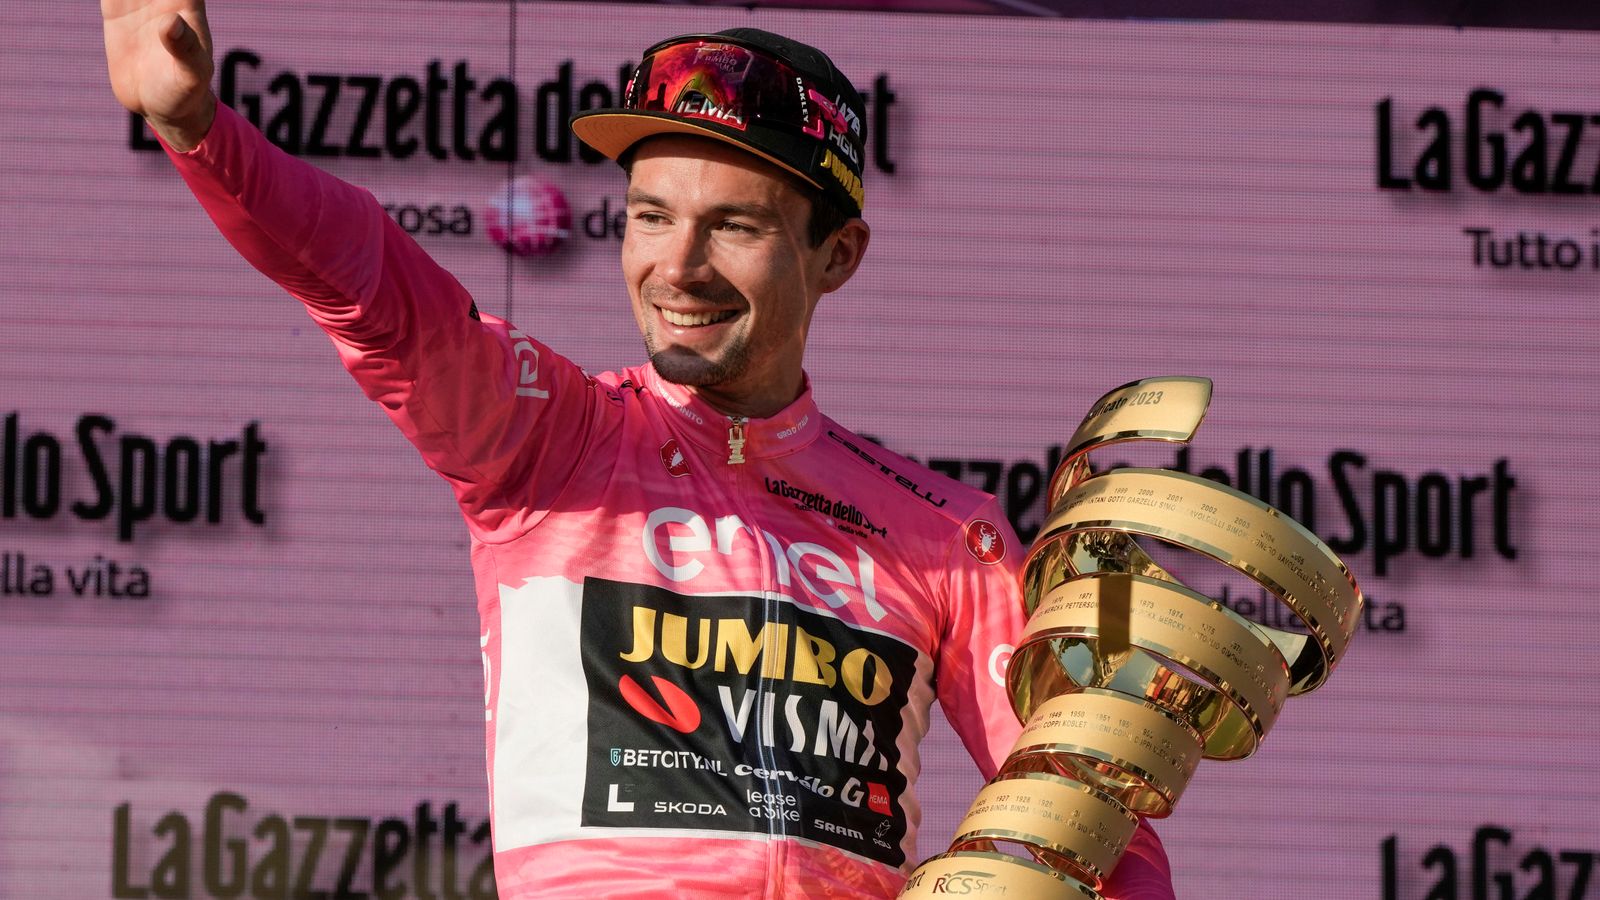 Giro d'Italia Primoz Roglic first Slovenian to win the event